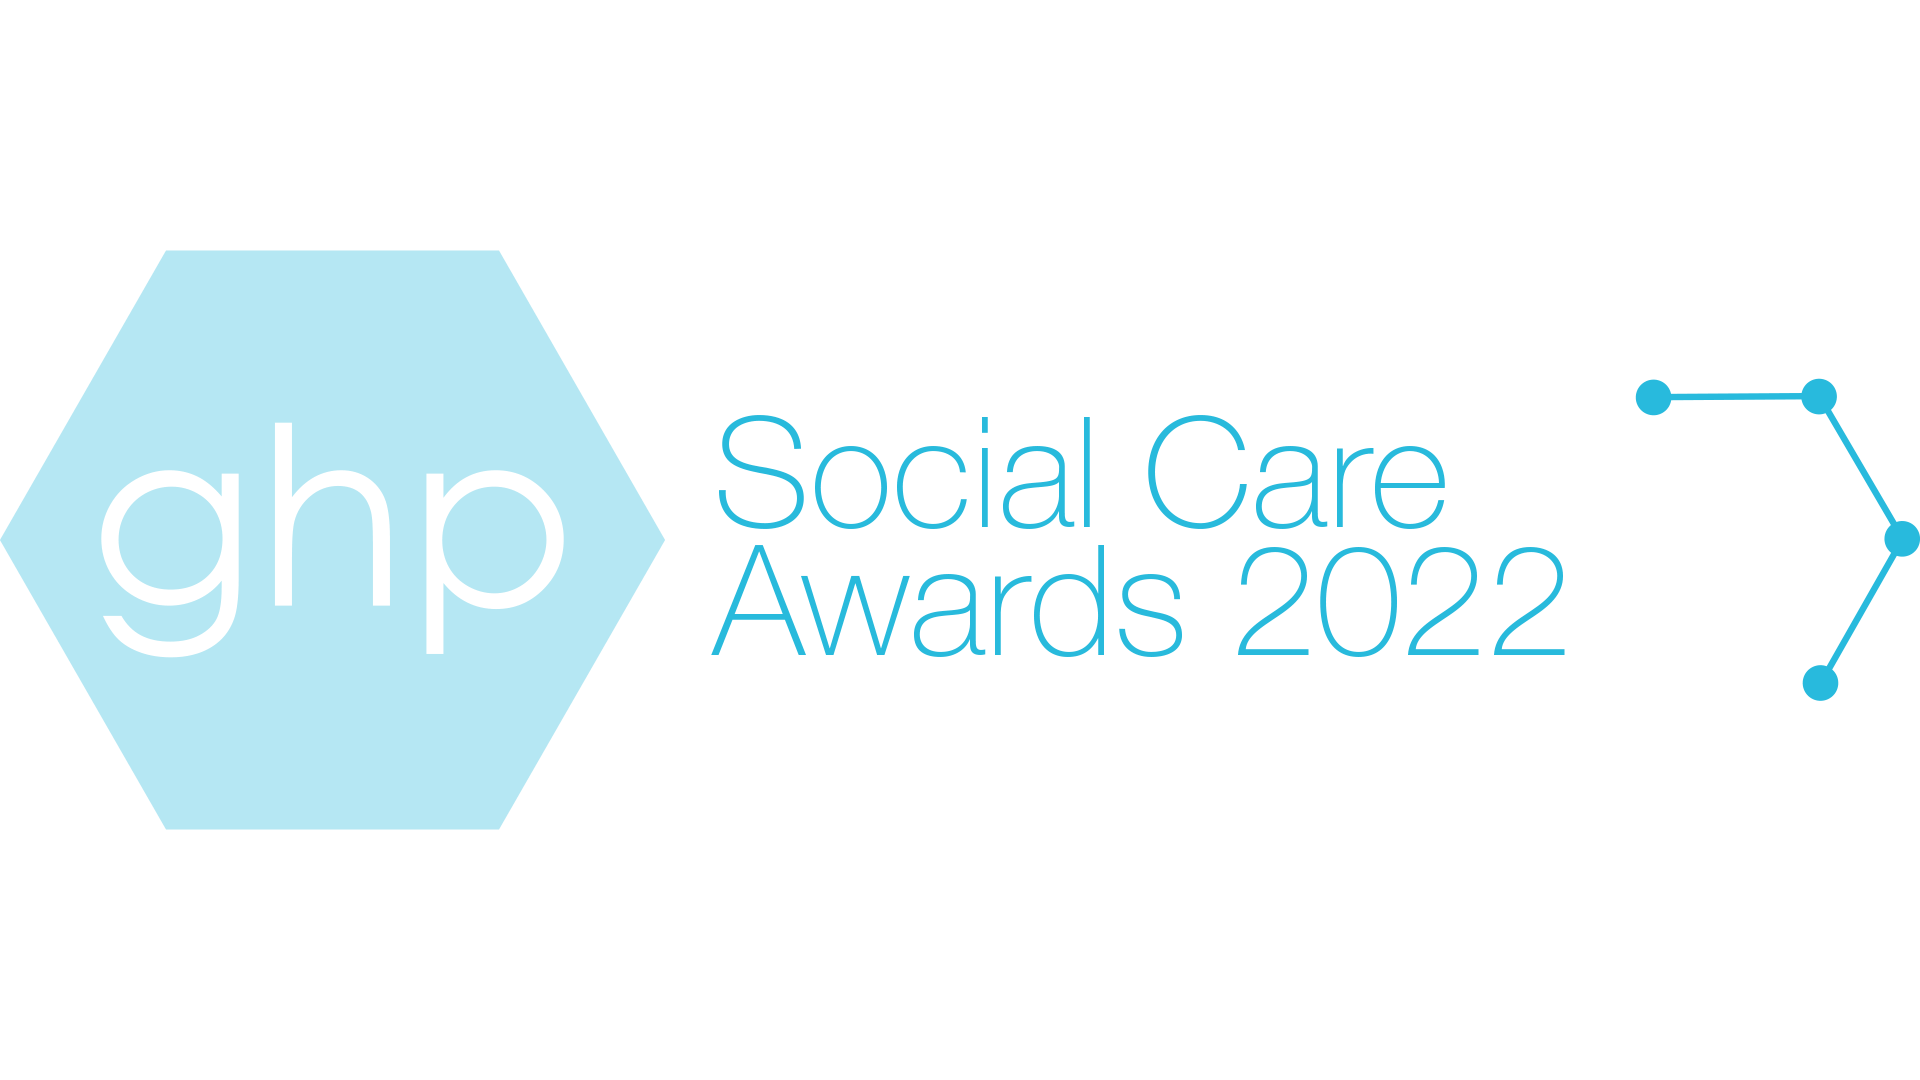 GHP 2022 Social Care Awards logo